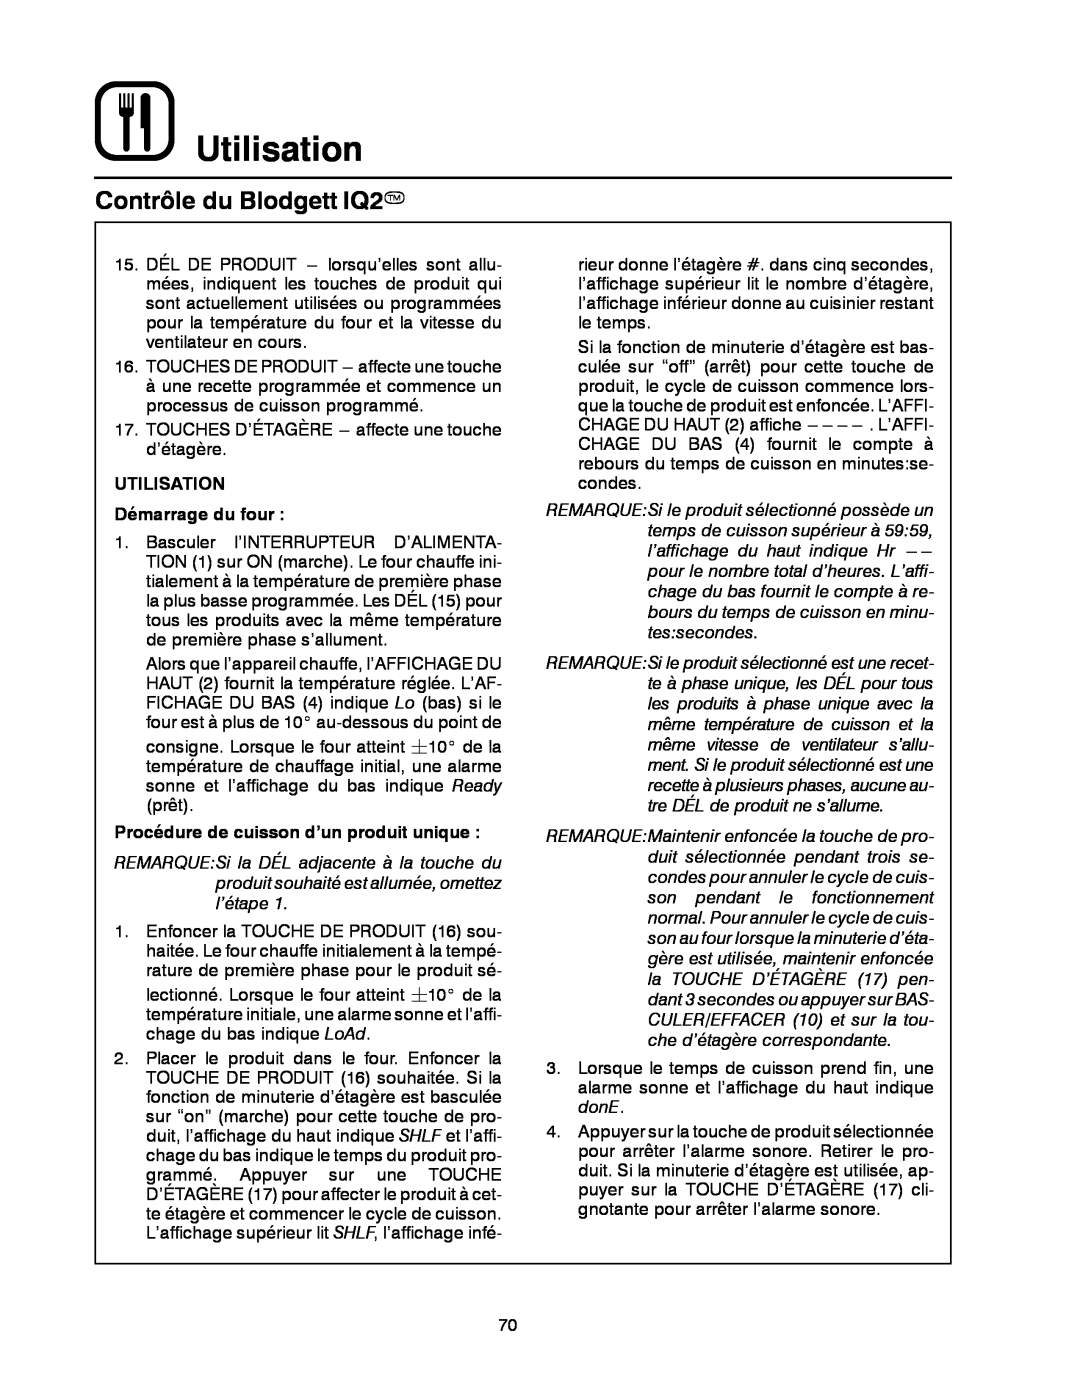 Blodgett DFG-50 manual Utilisation, Contrôle du Blodgett IQ2T, UTILISATION Démarrage du four 